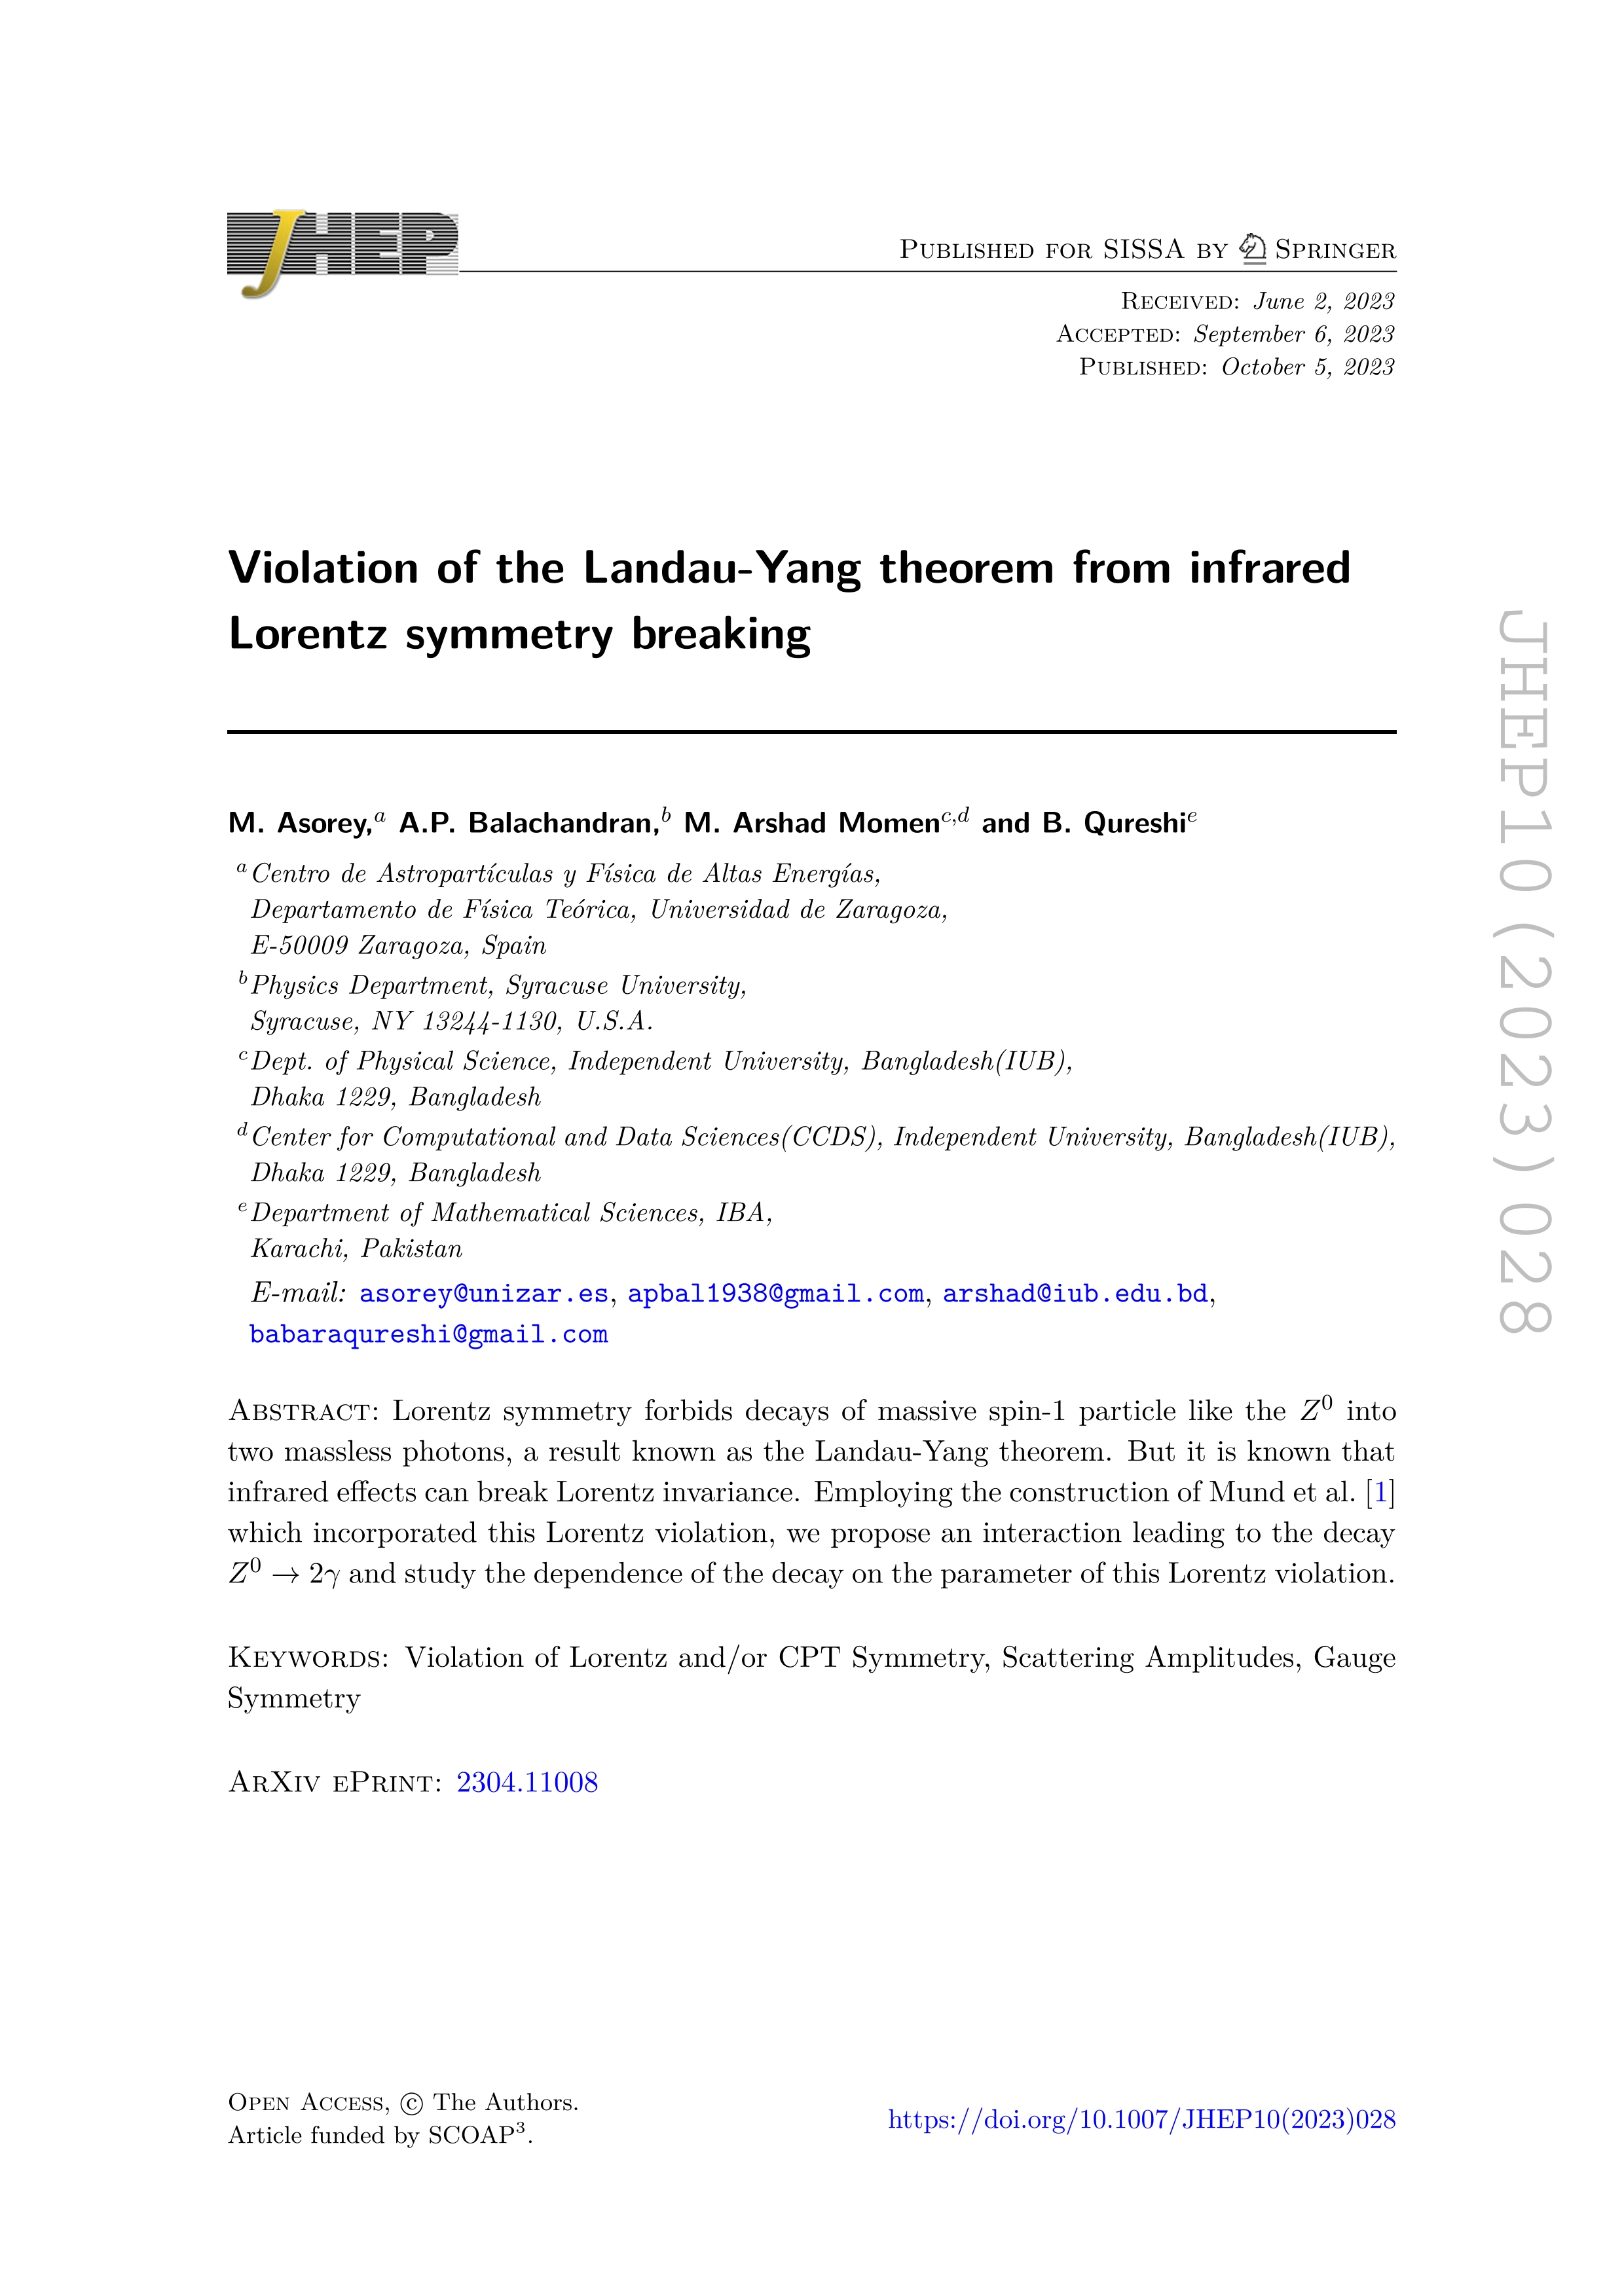 Violation of the Landau-Yang theorem from infrared Lorentz symmetry breaking